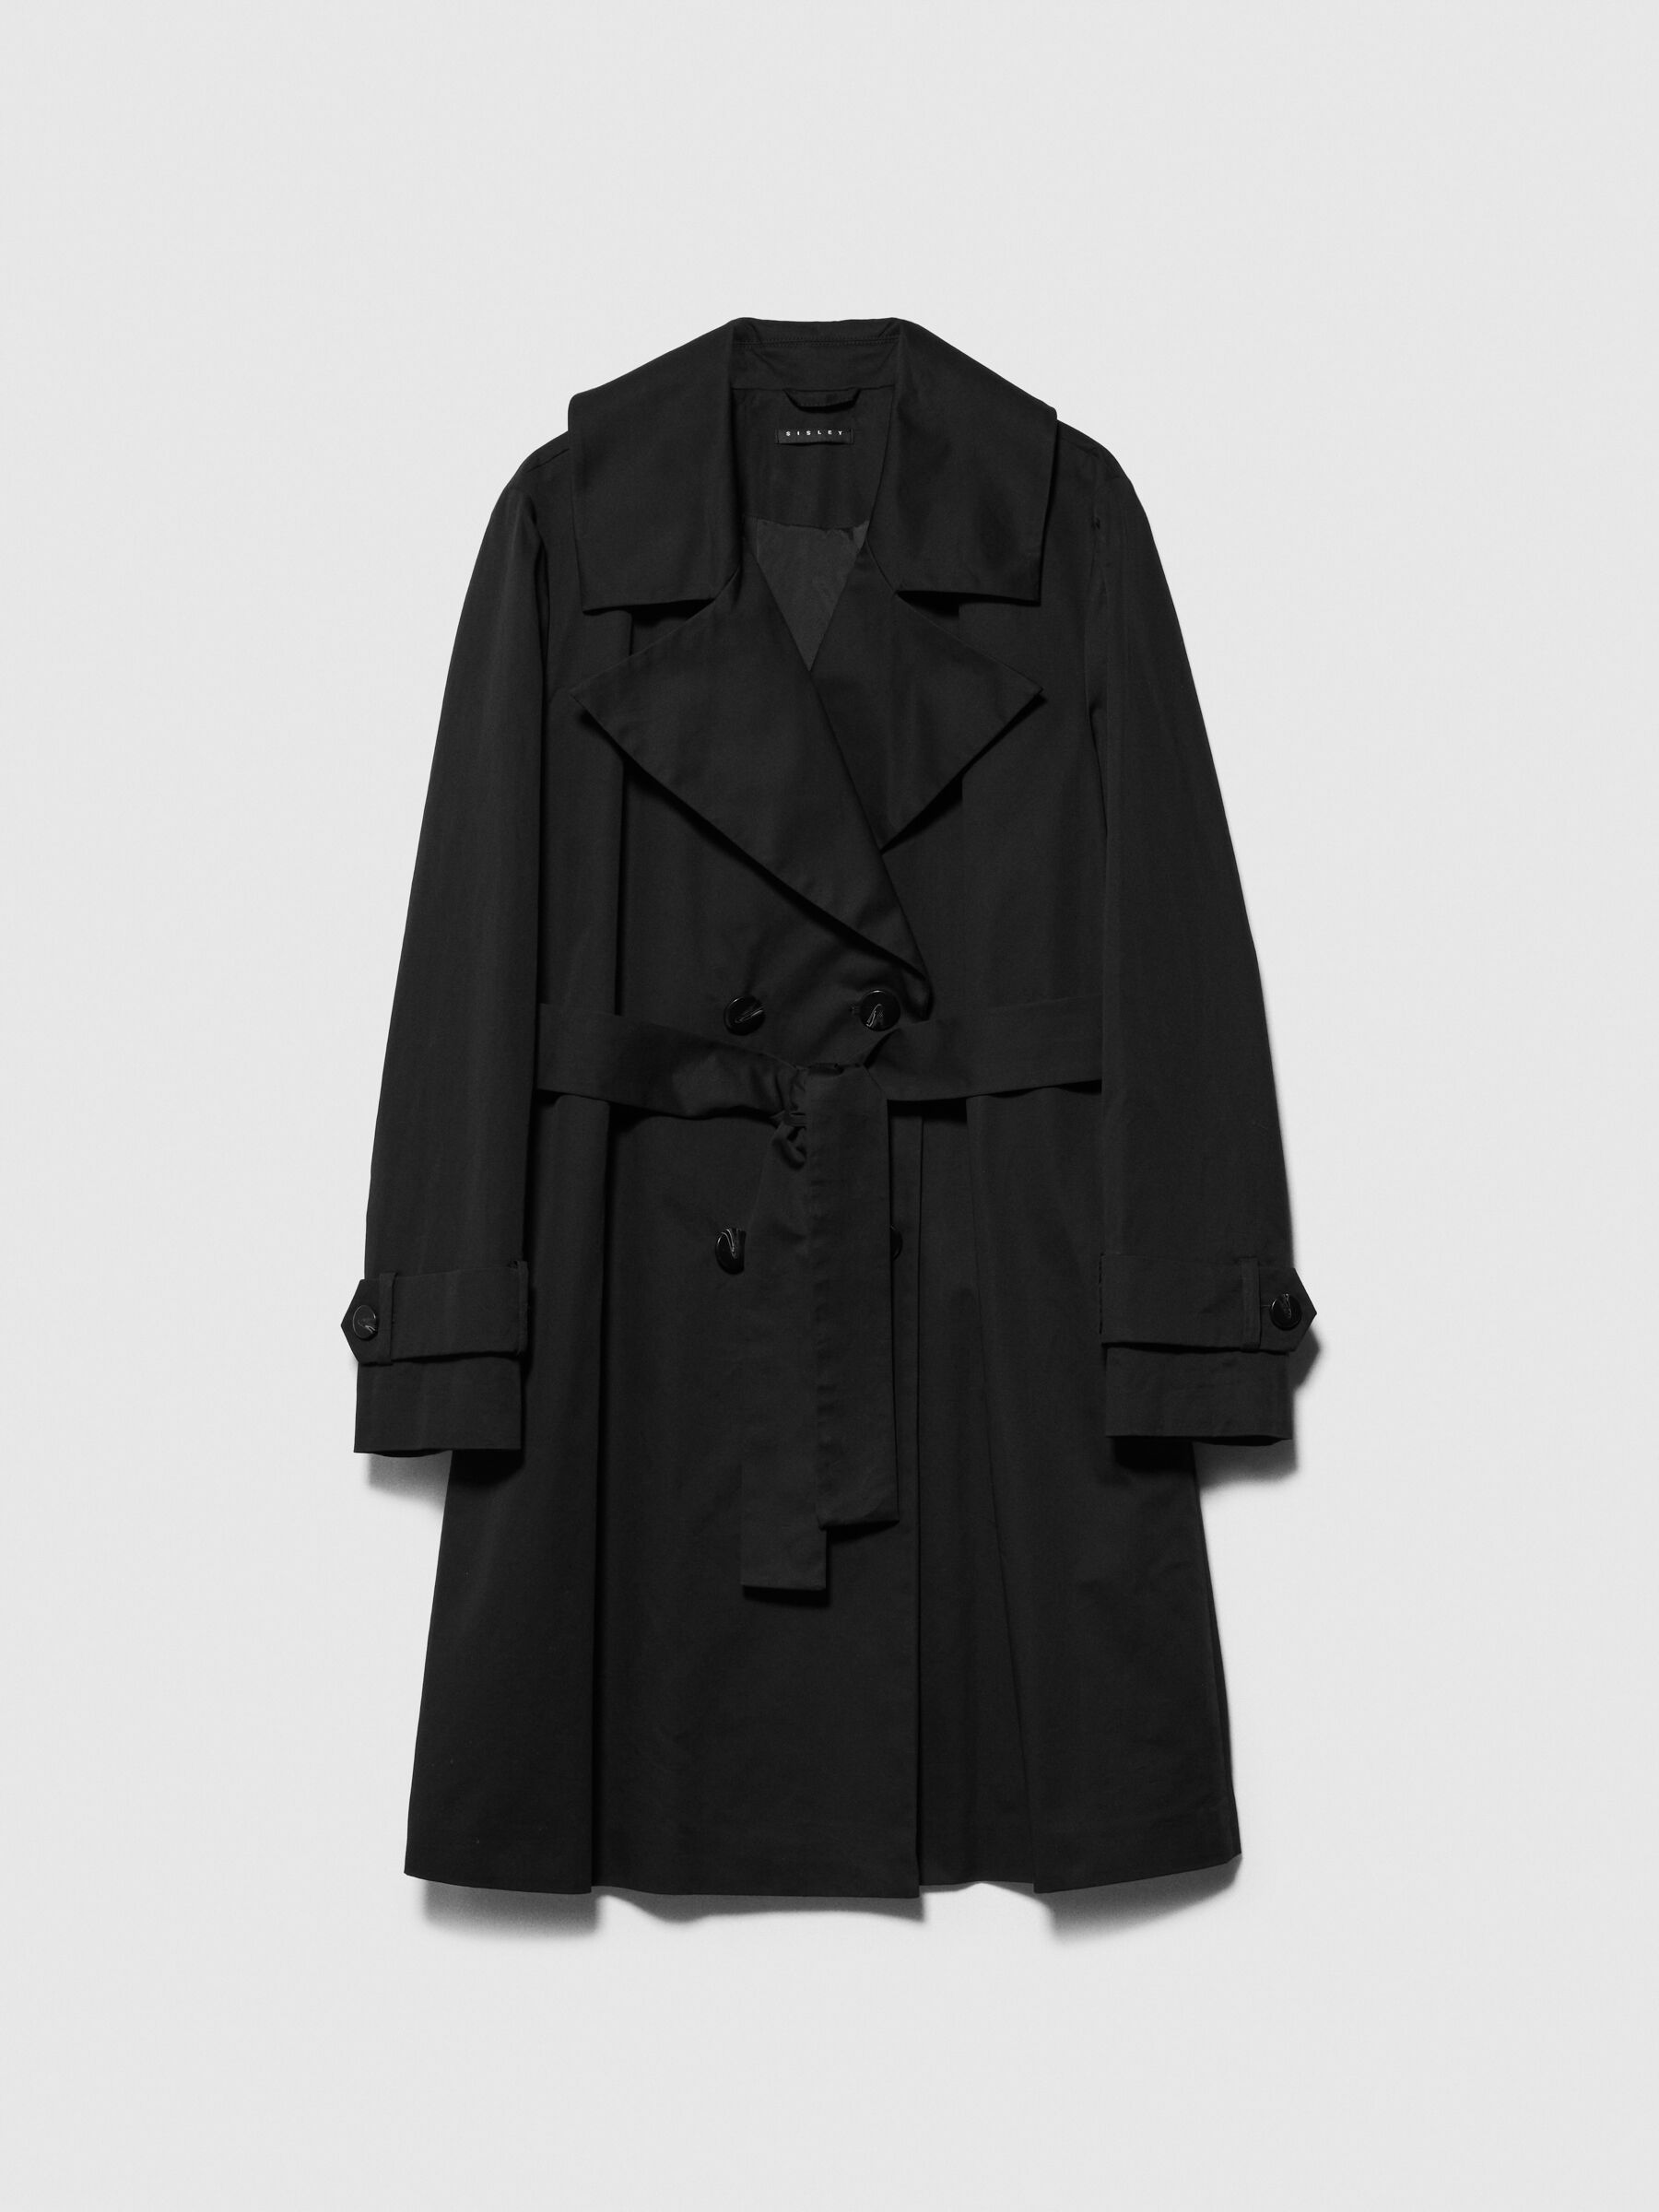 Oversized trench coat with sash, Black - Sisley